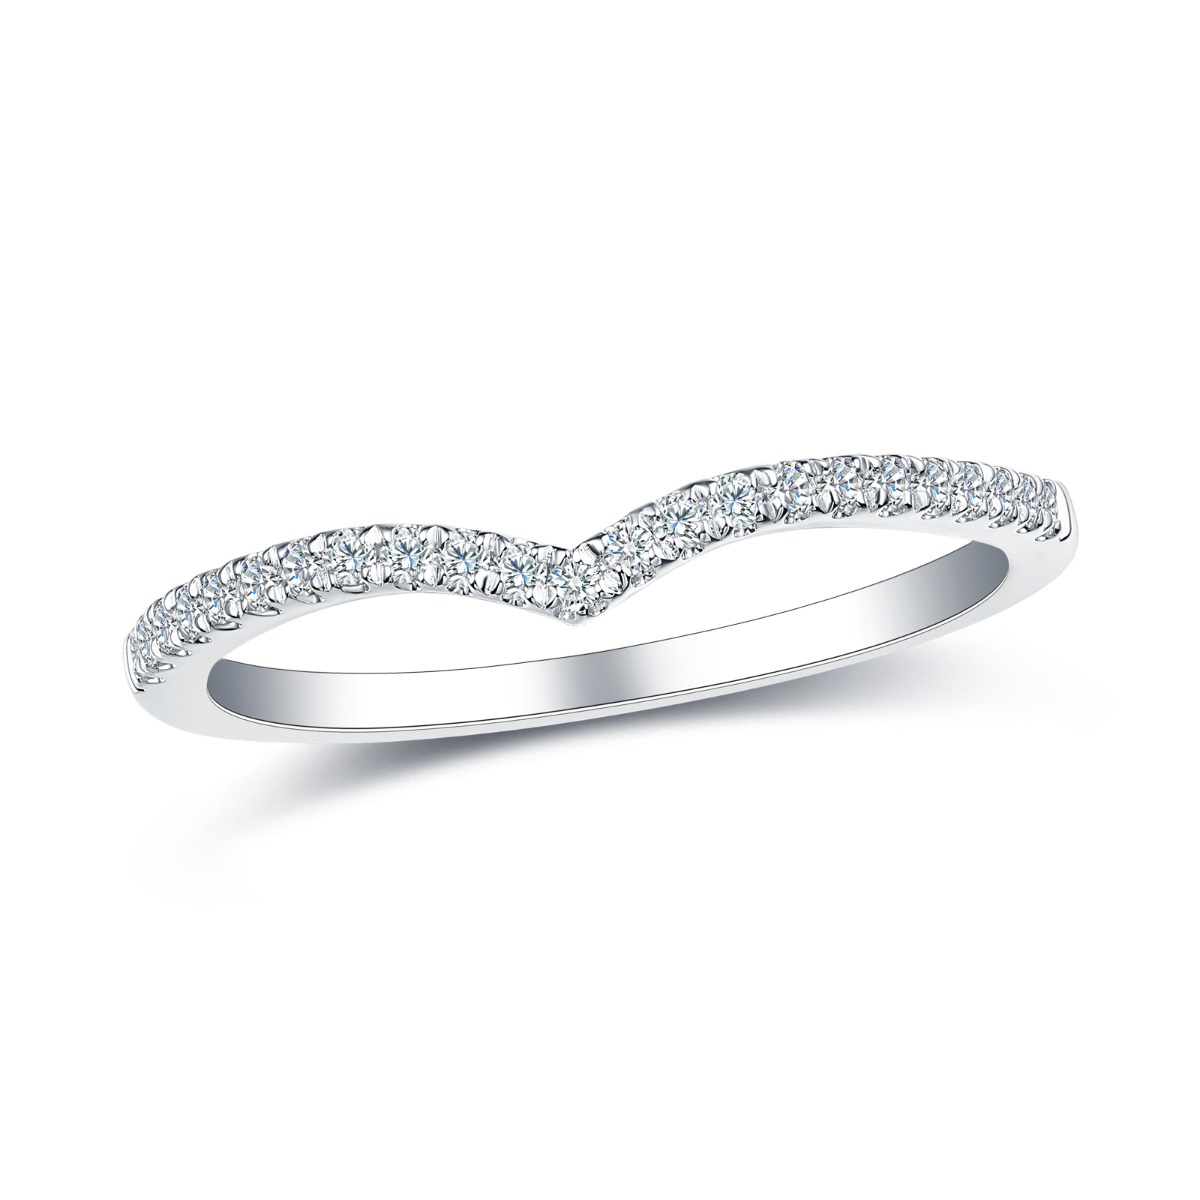 R35567WHT – 18K White Gold Diamond Ring, 0.15 TCW